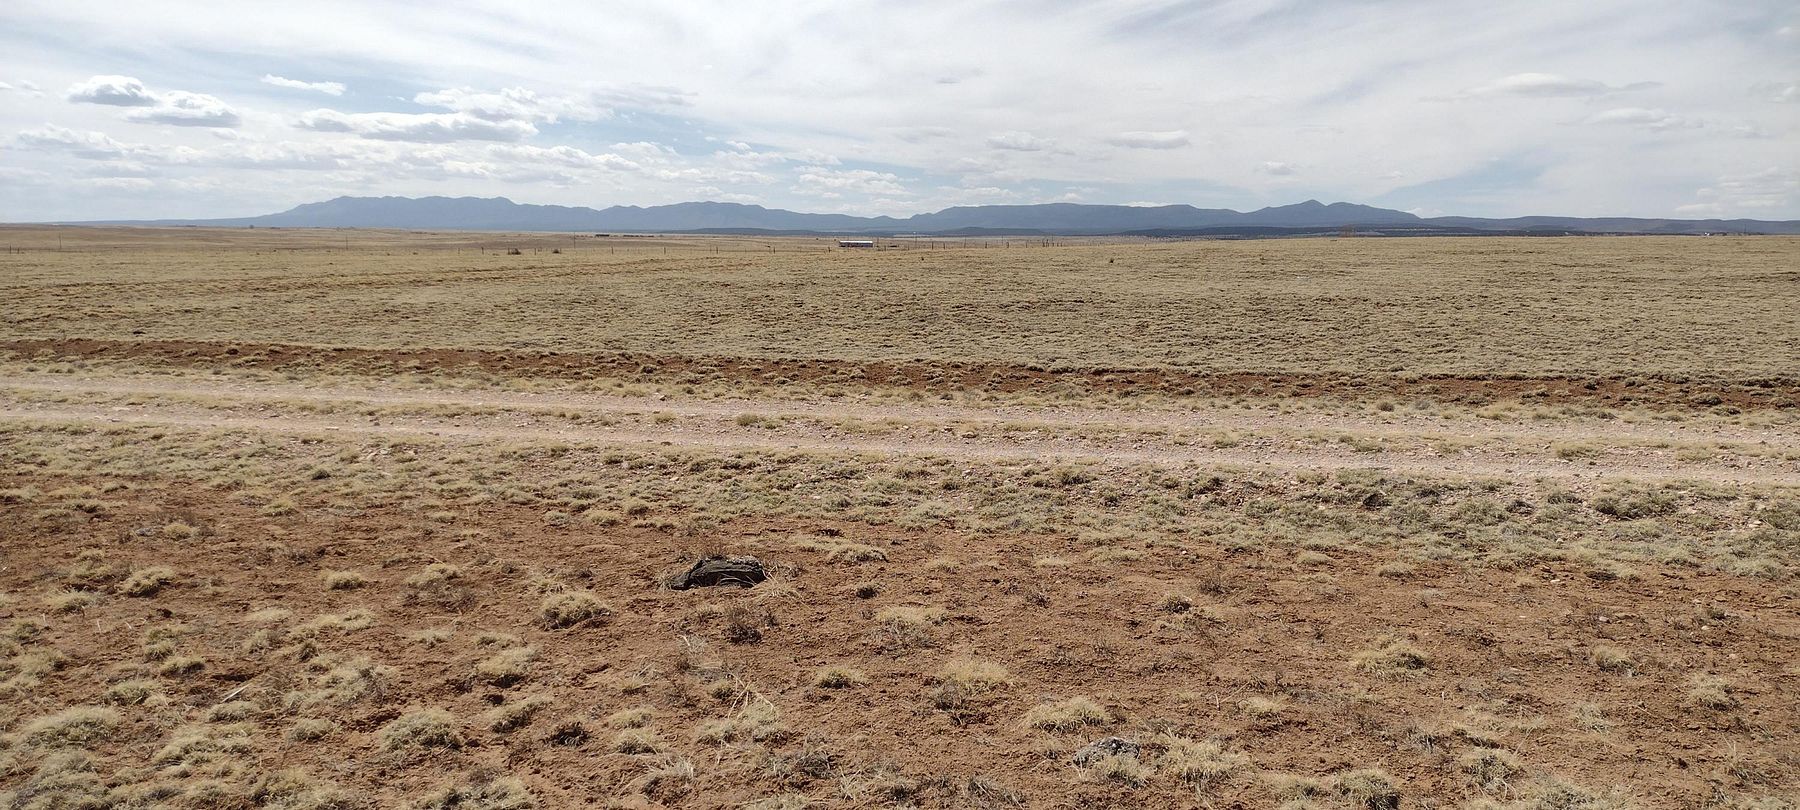 41 Acres of Land Estancia, New Mexico, NM